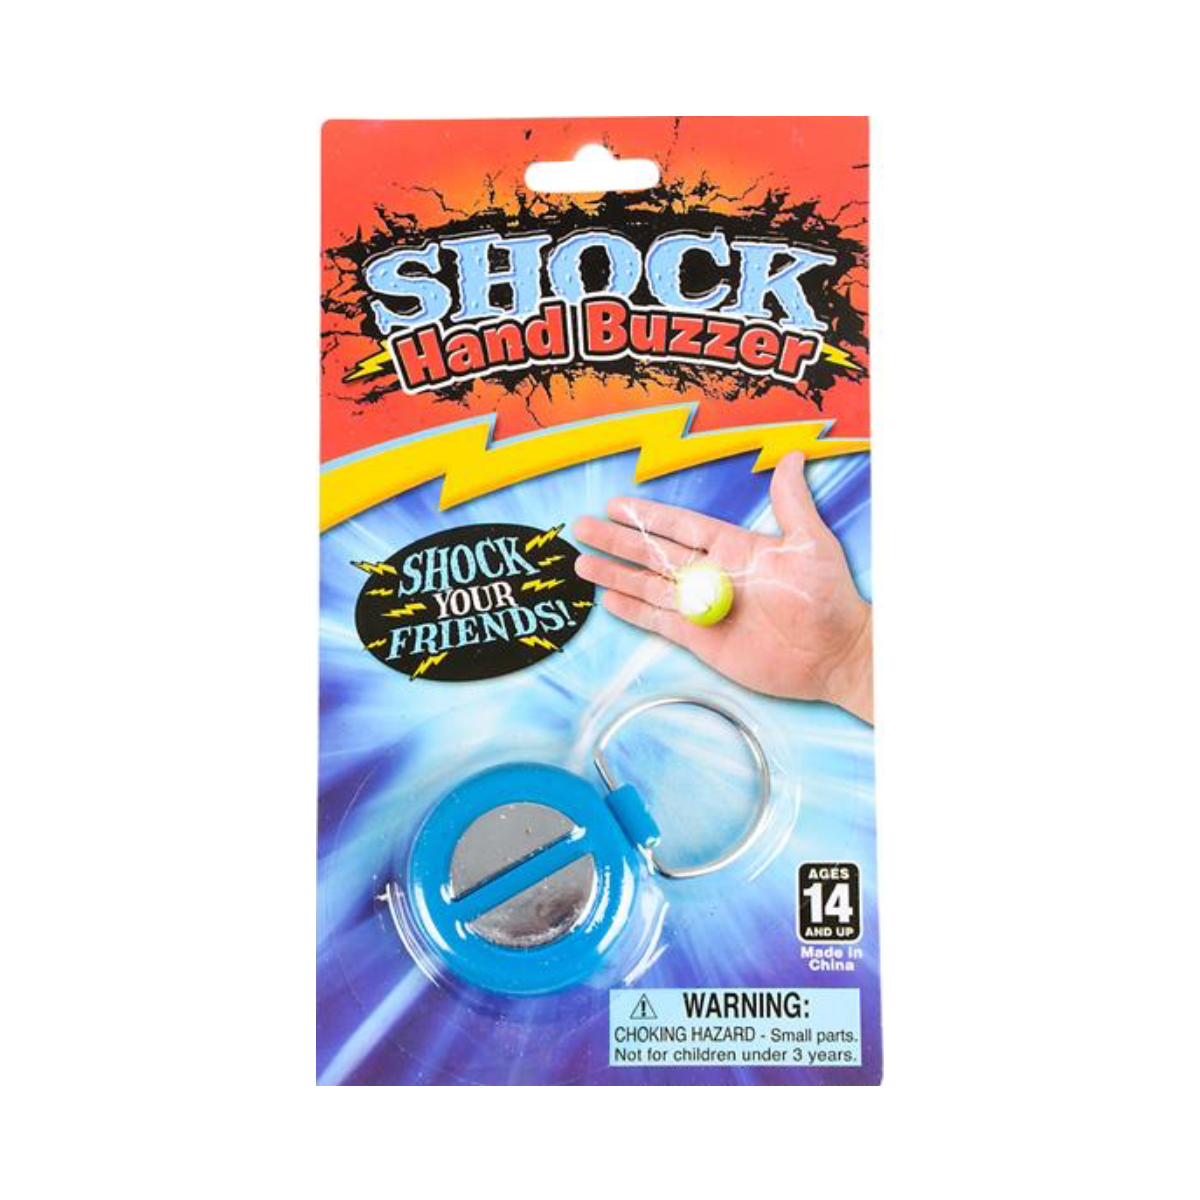 Shock Stapler Gag by Loftus